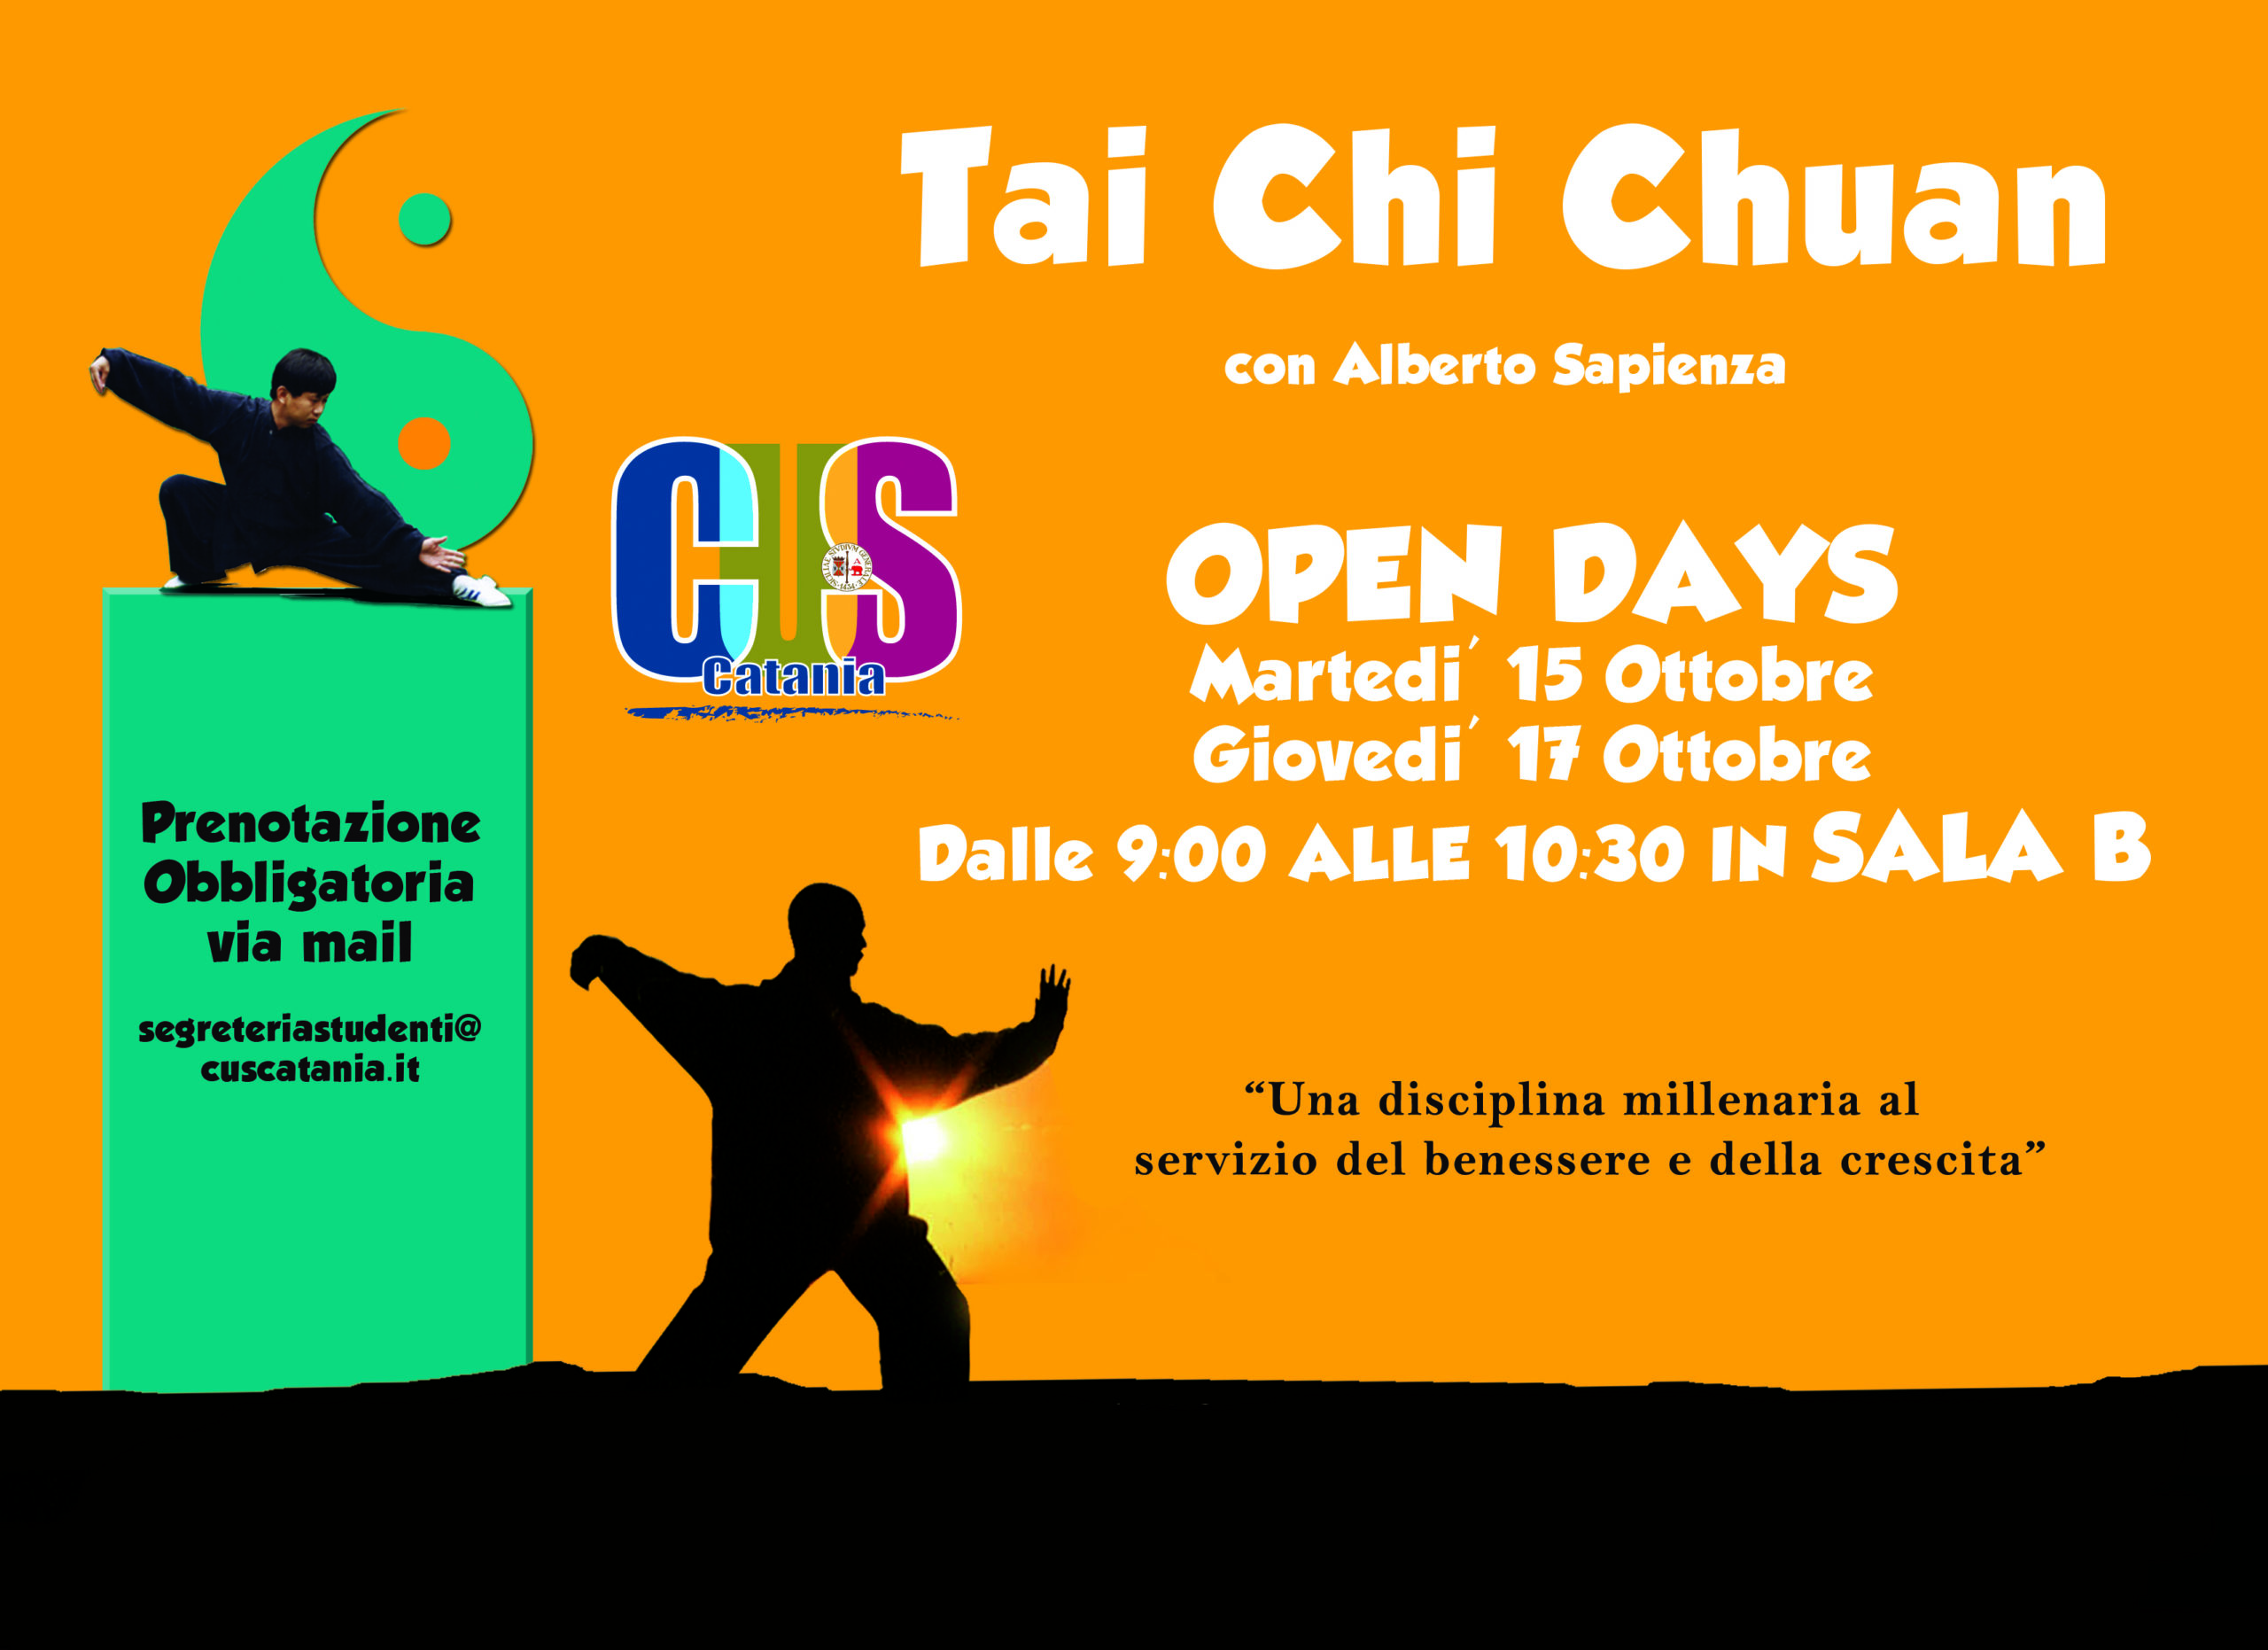 Nuovo corso di Tai Chi Chuan al CUS: subito 2 open days